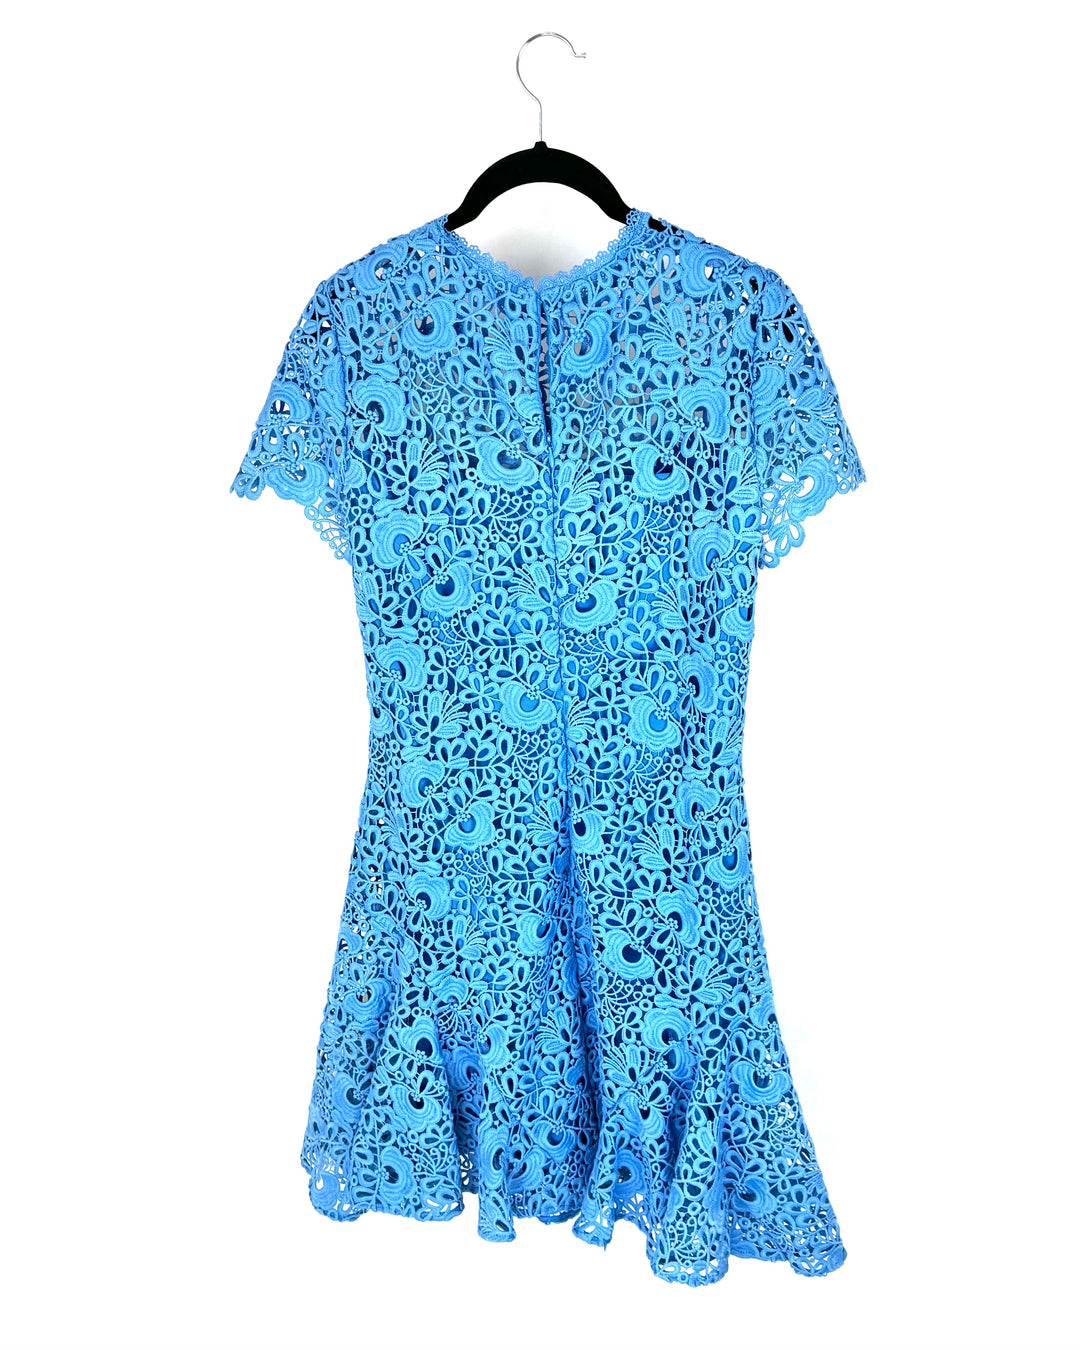 Light Blue Floral Applique Dress - Size 4